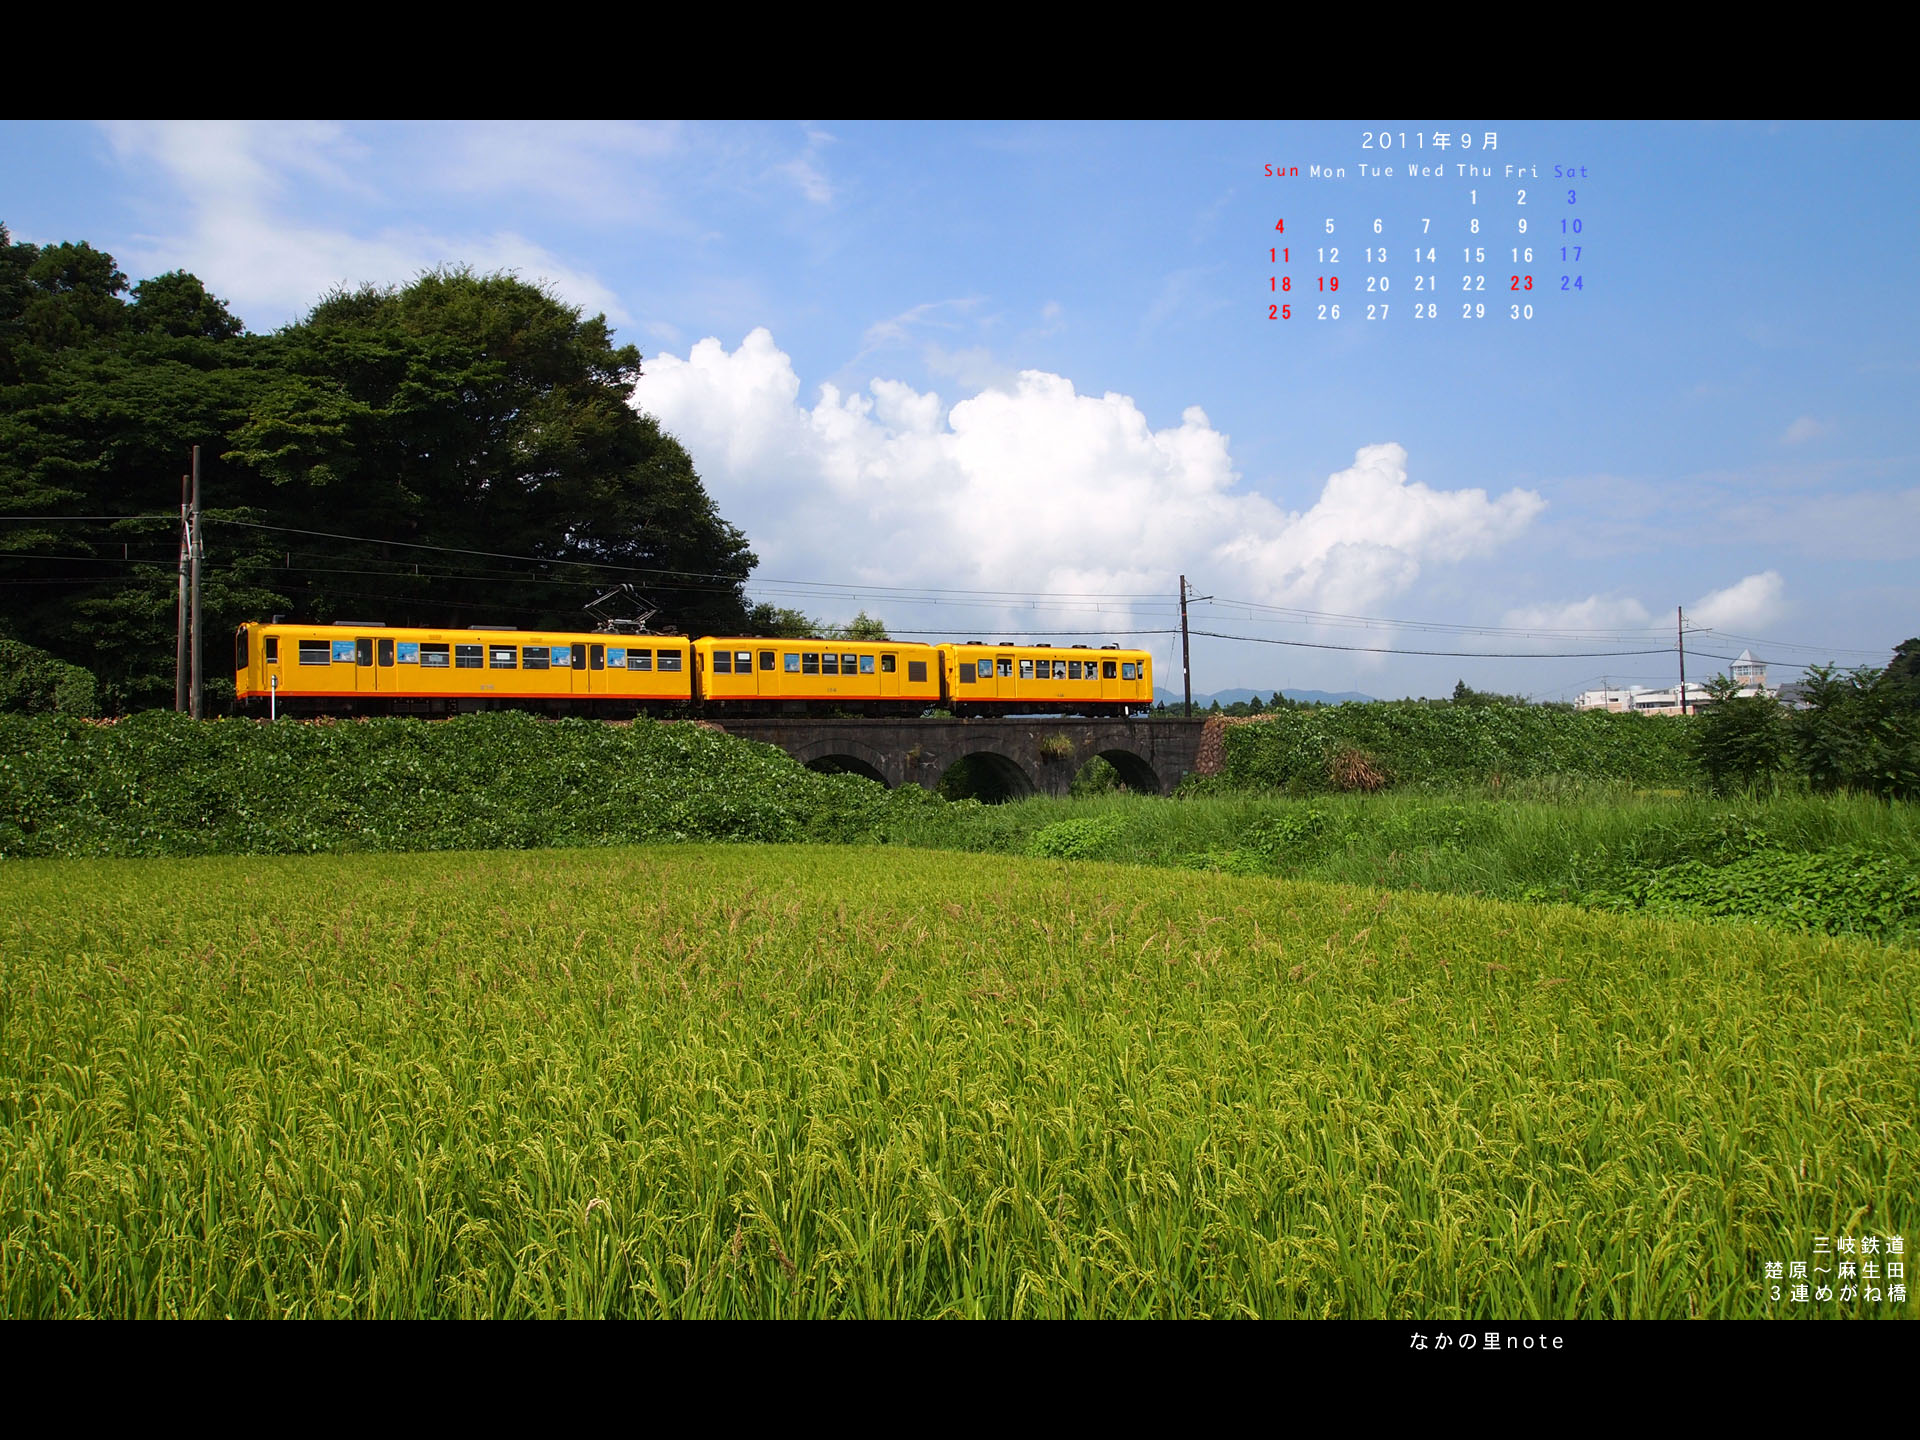 9月4対3画面用壁紙三岐鉄道北勢線3連めがね橋 北播磨ローカルネットワーク